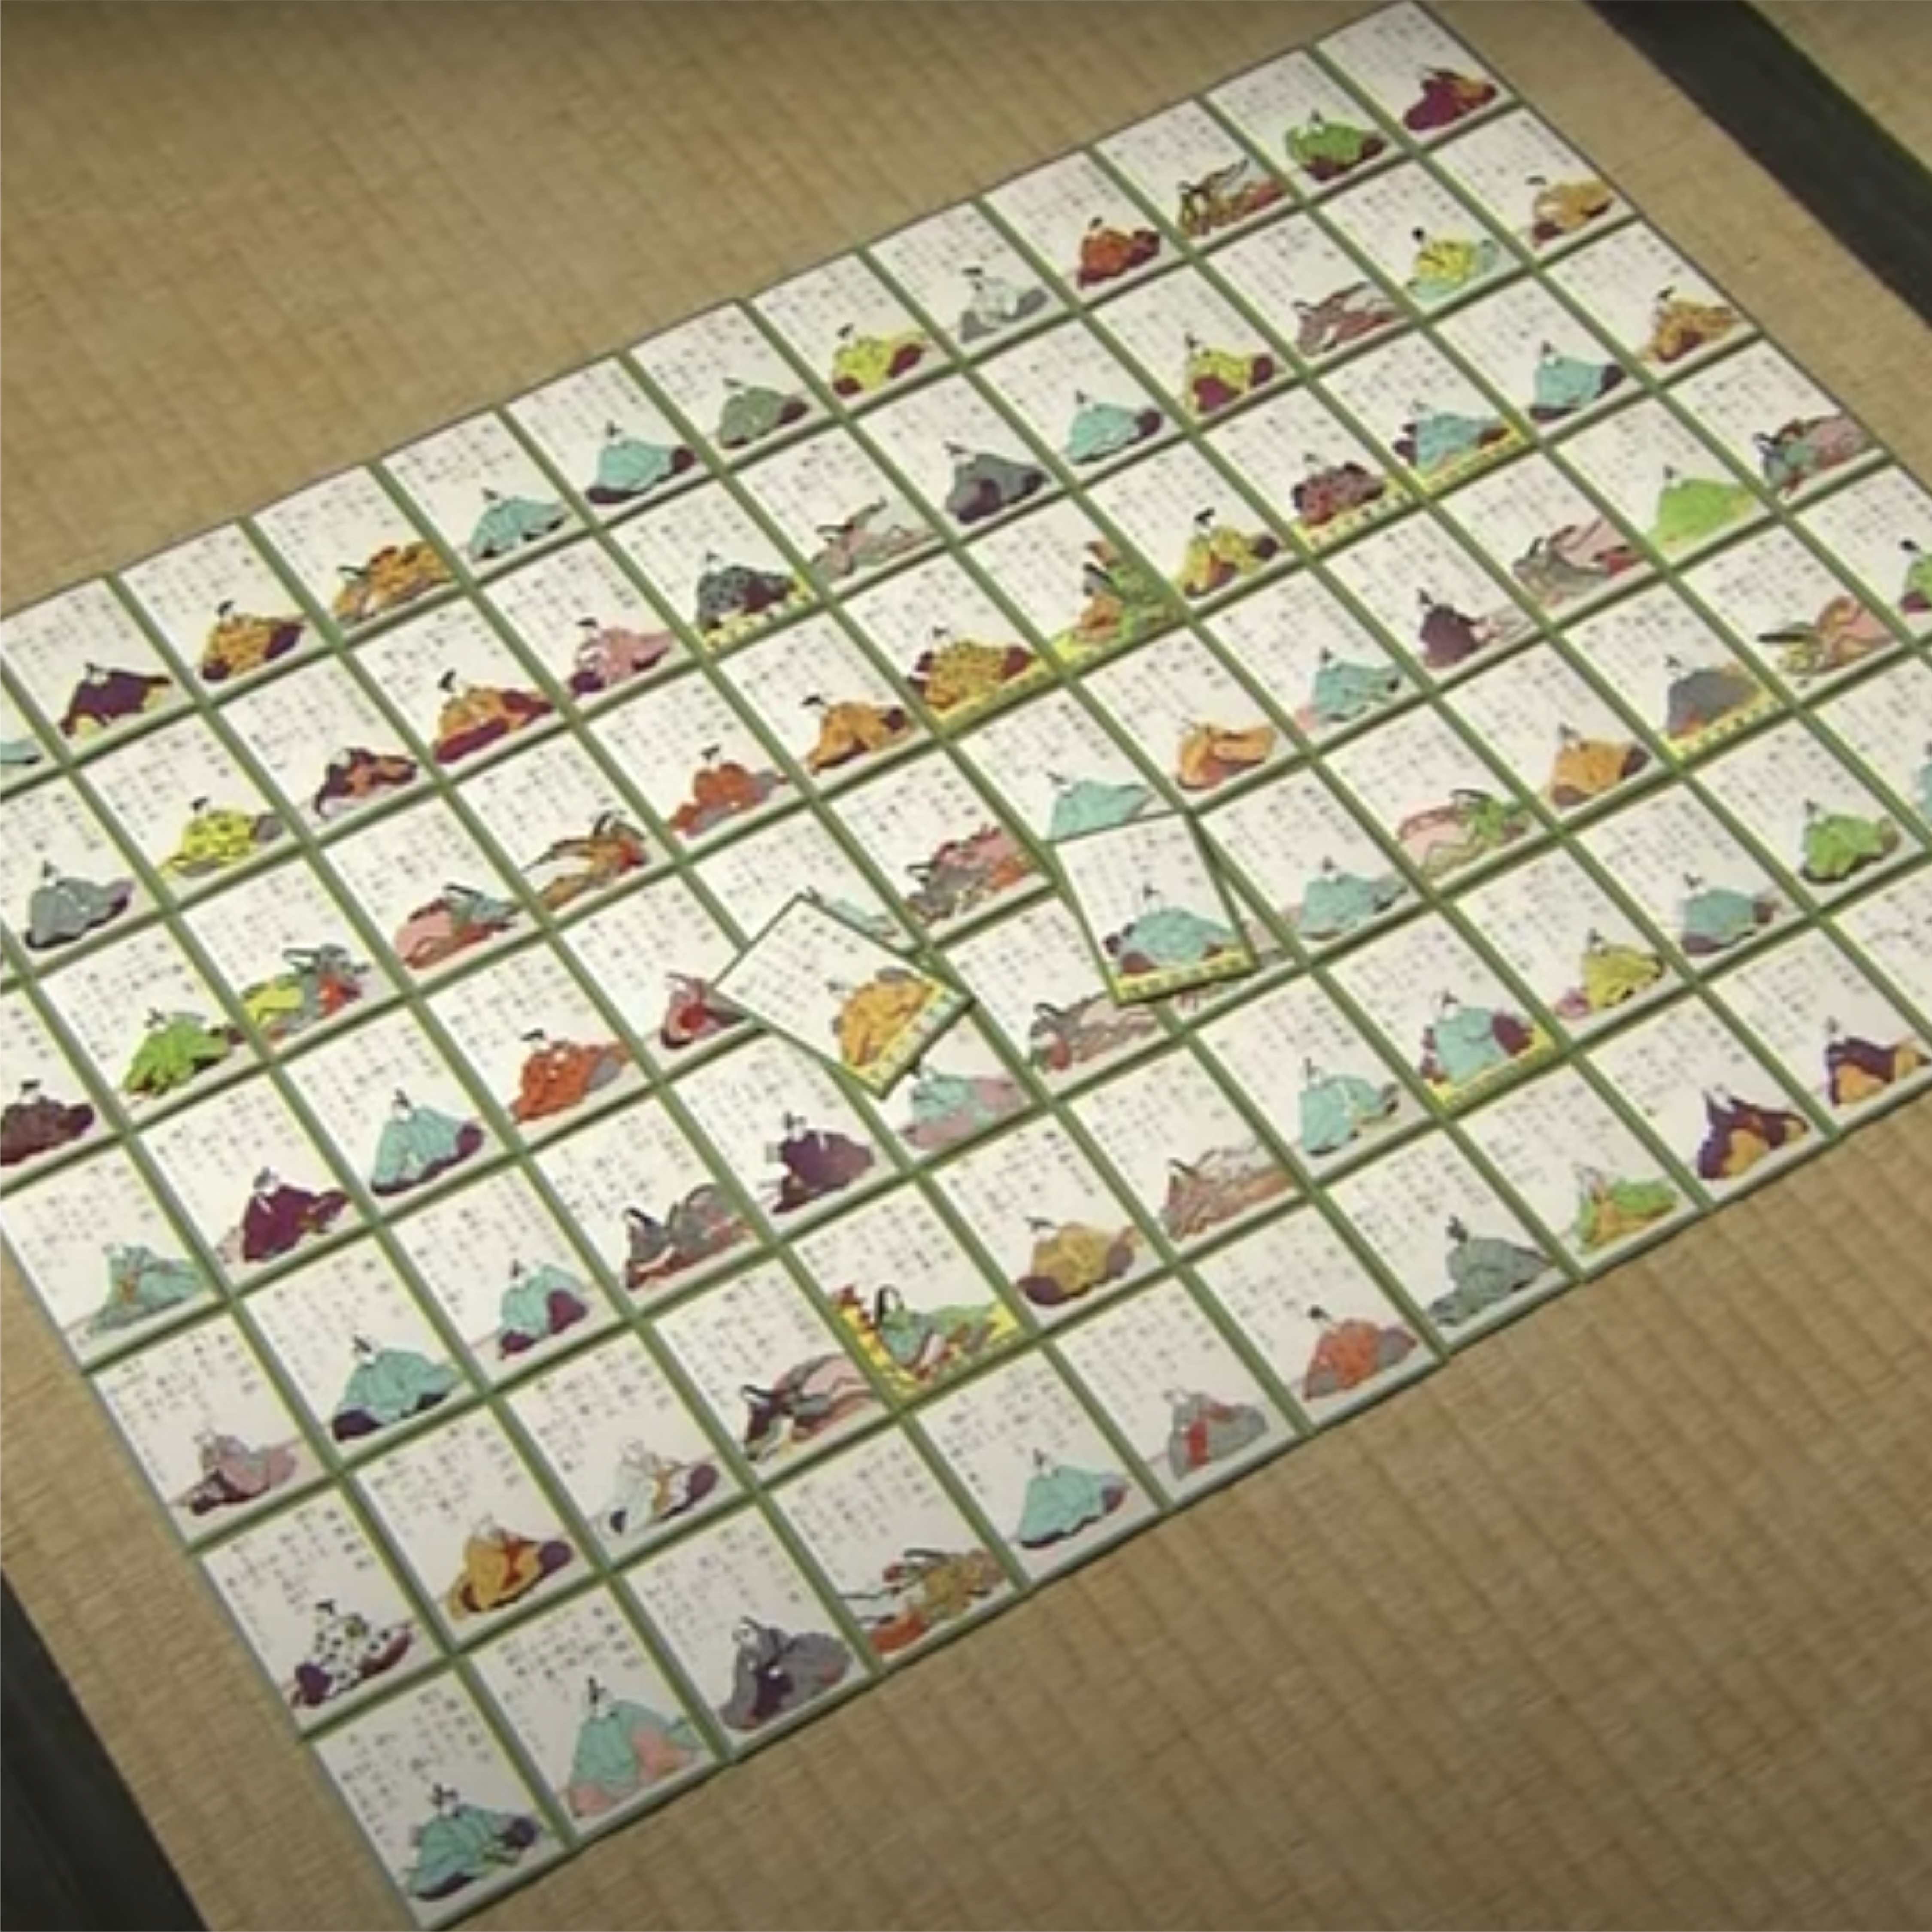 En la imagen se ven cartas modernas del juego japonés karuta desplegadas sobre un tatami. Fueron realizadas de manera industrial, impresas a color sobre papel.